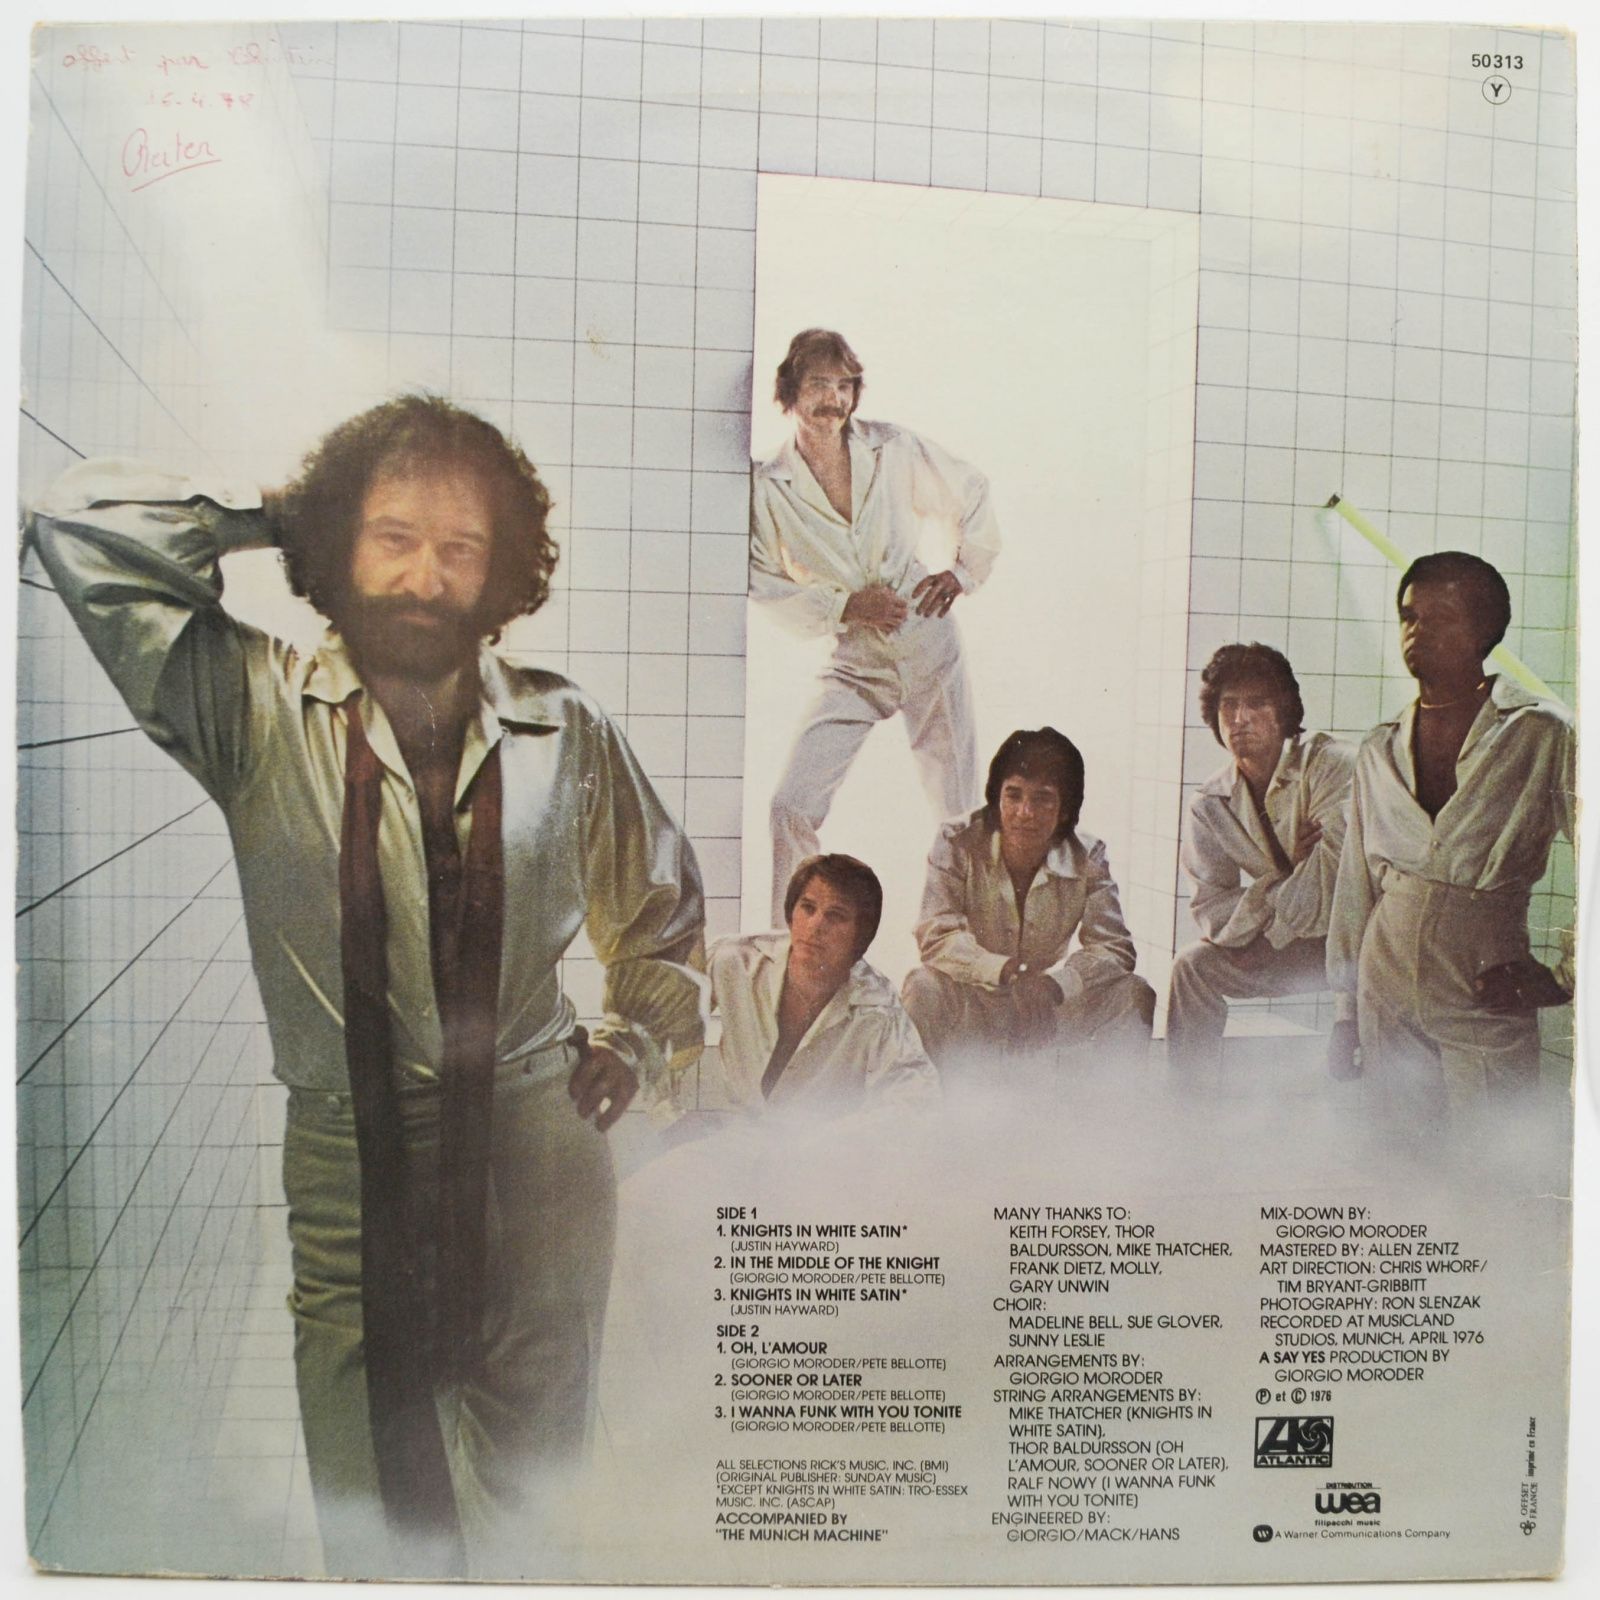 Giorgio — Knights In White Satin, 1976